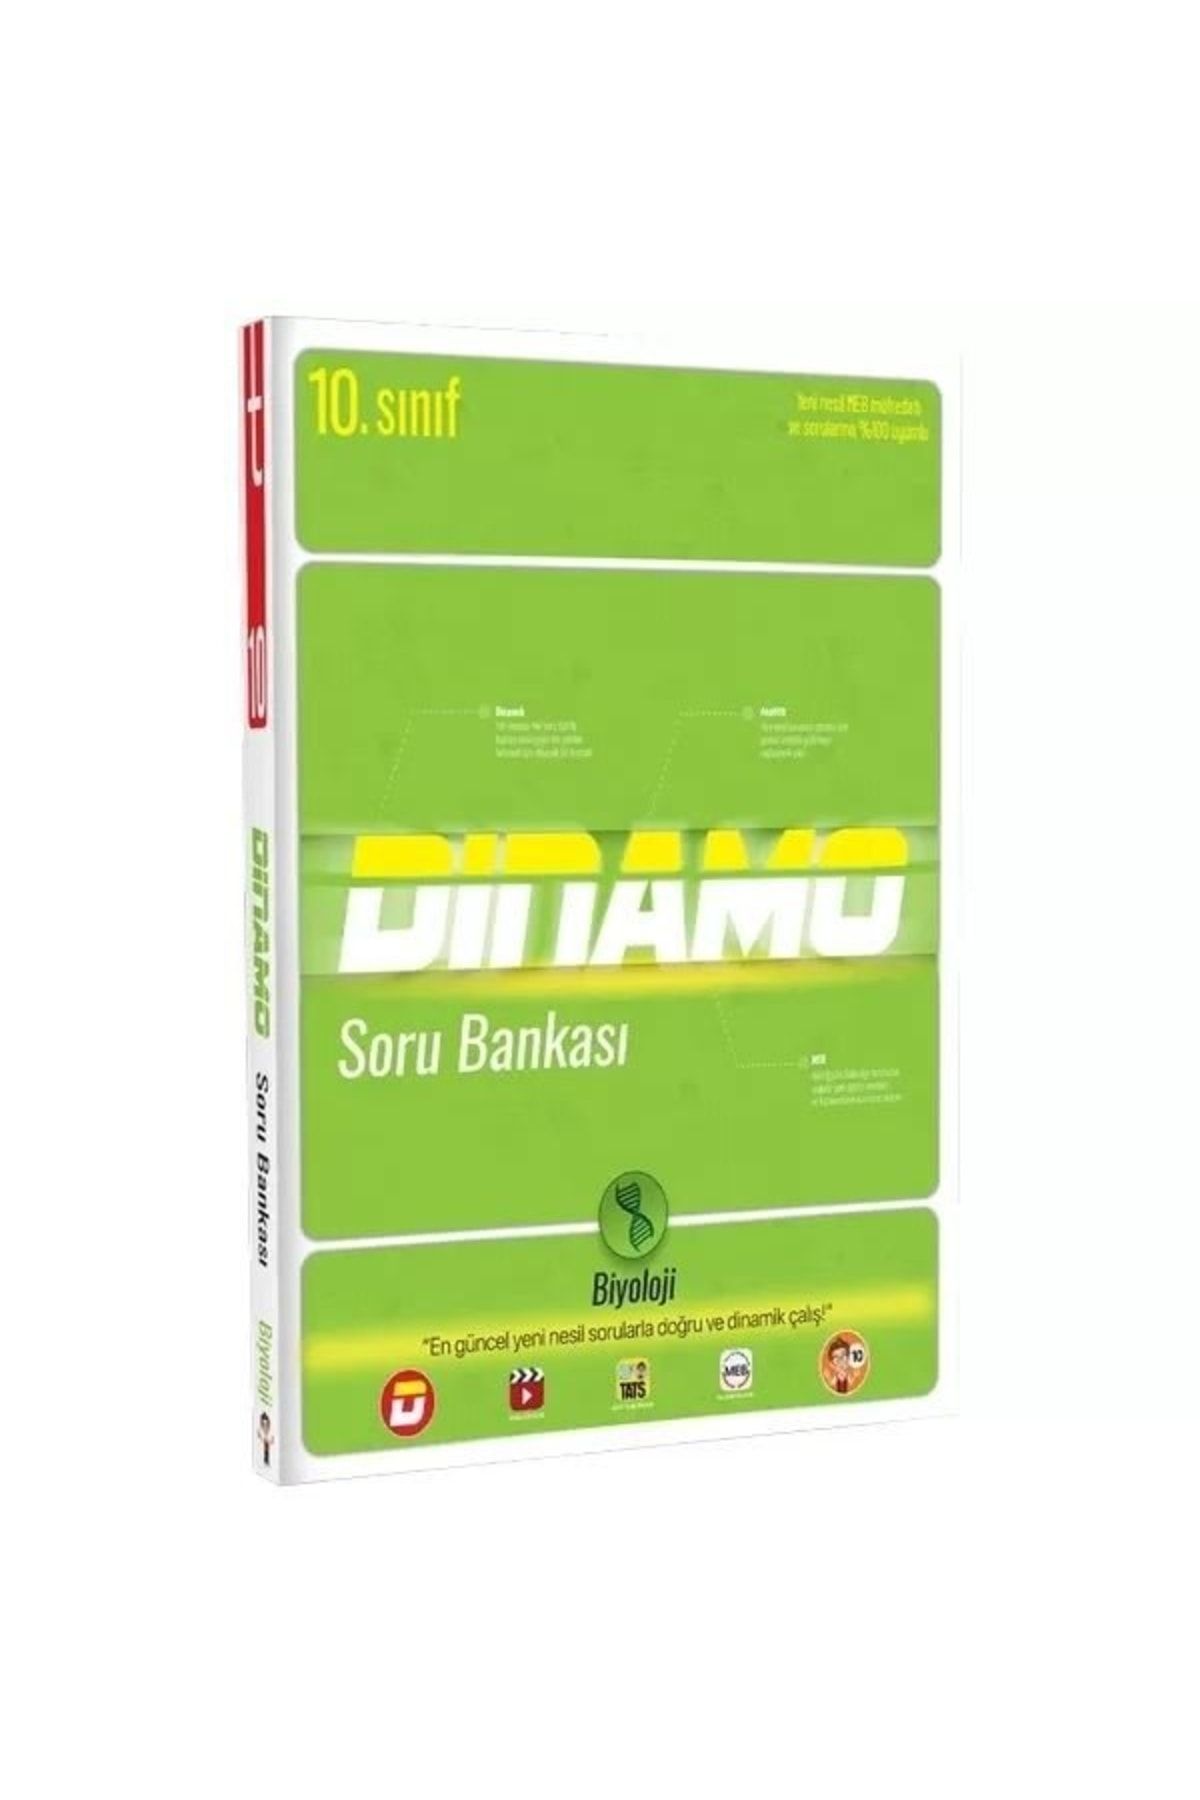 Tonguç Yayınları 10.sınıf Dinamo Biyoloji Soru Bankası